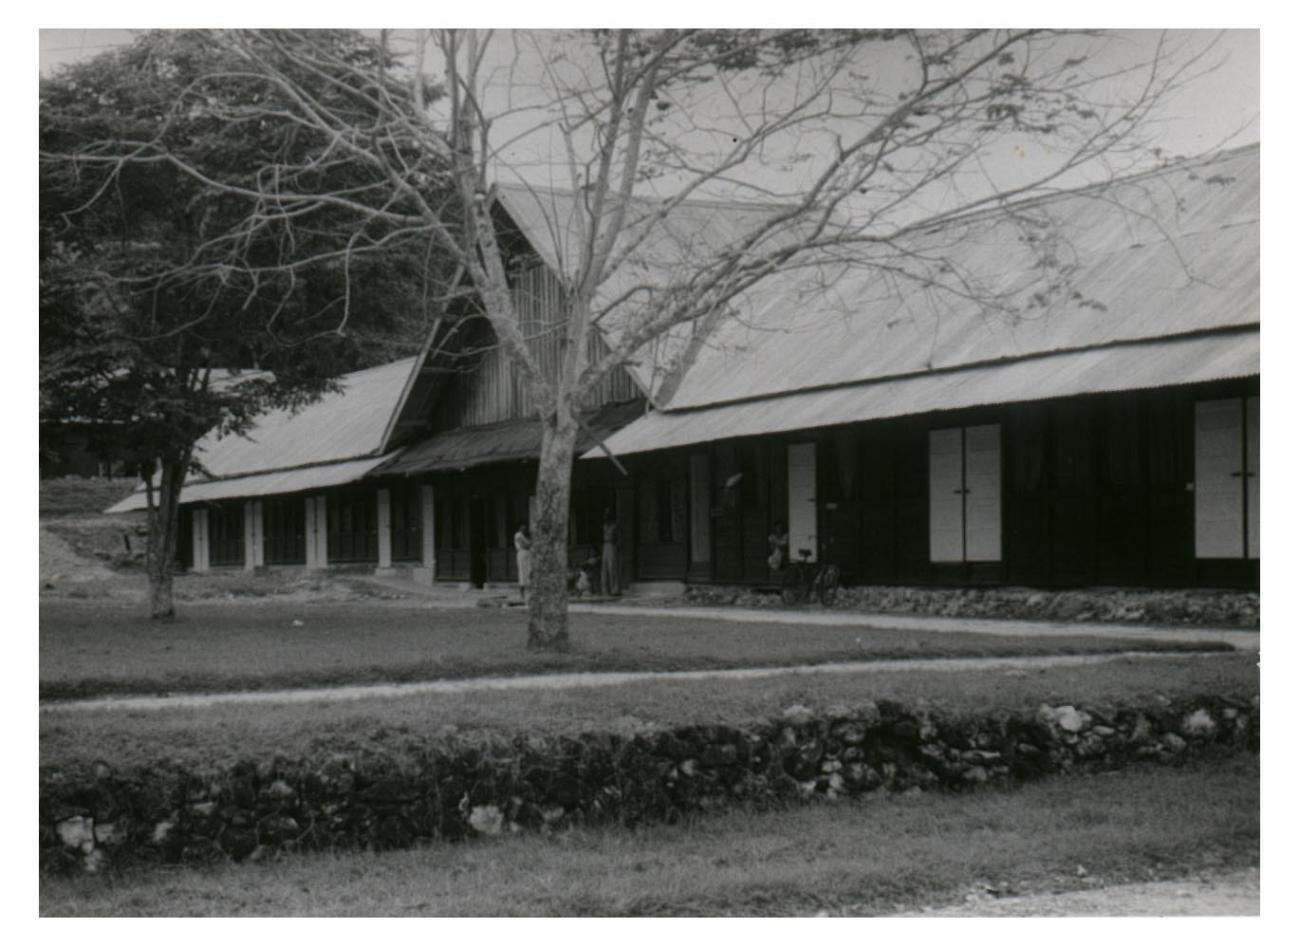 BD/54/21 - 
Kampong Manokwari, building
